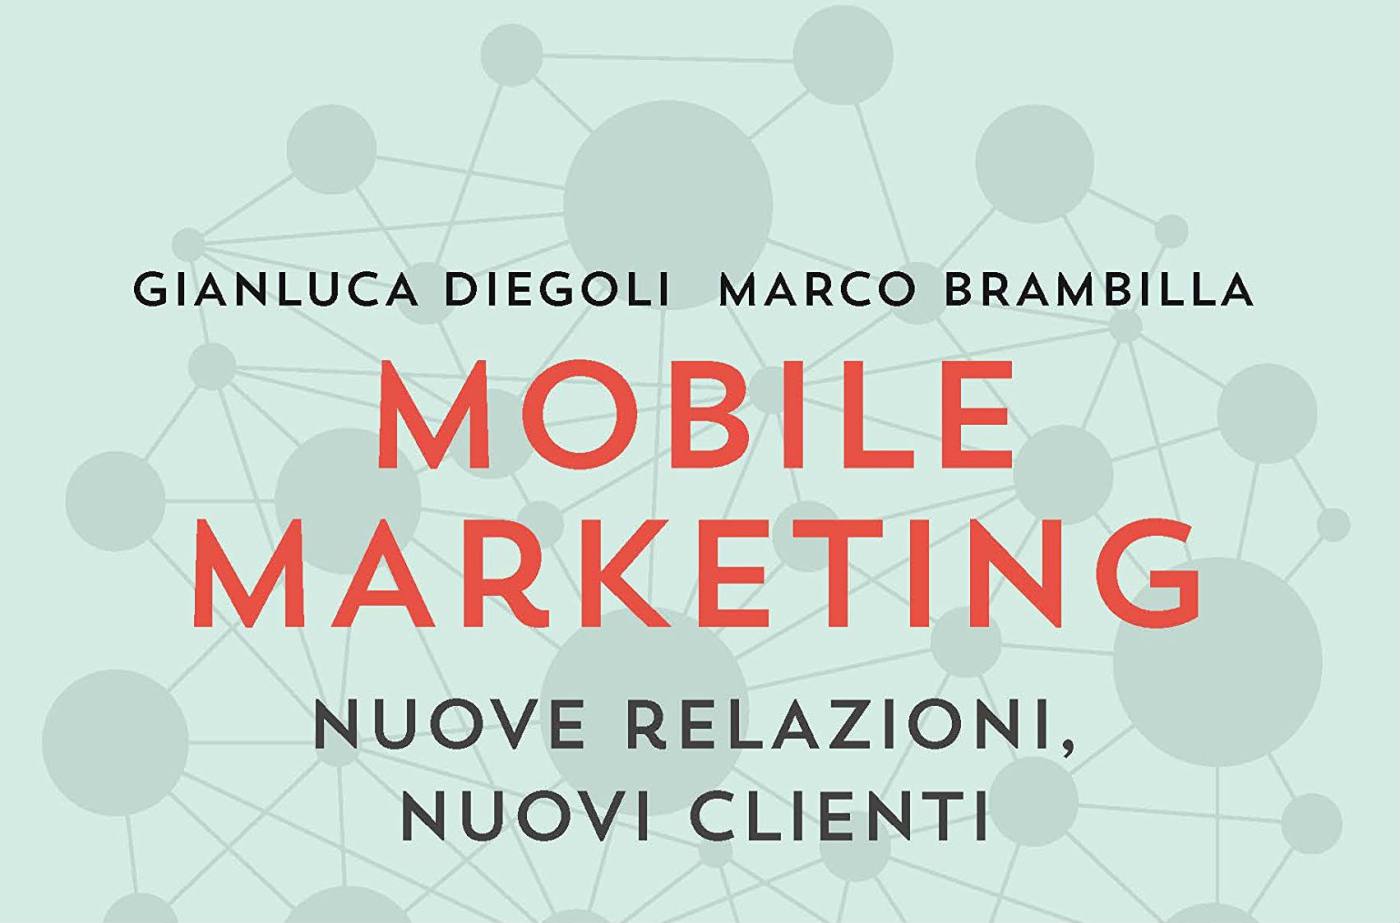 Mobile Marketing. Nuove relazioni, nuovi clienti